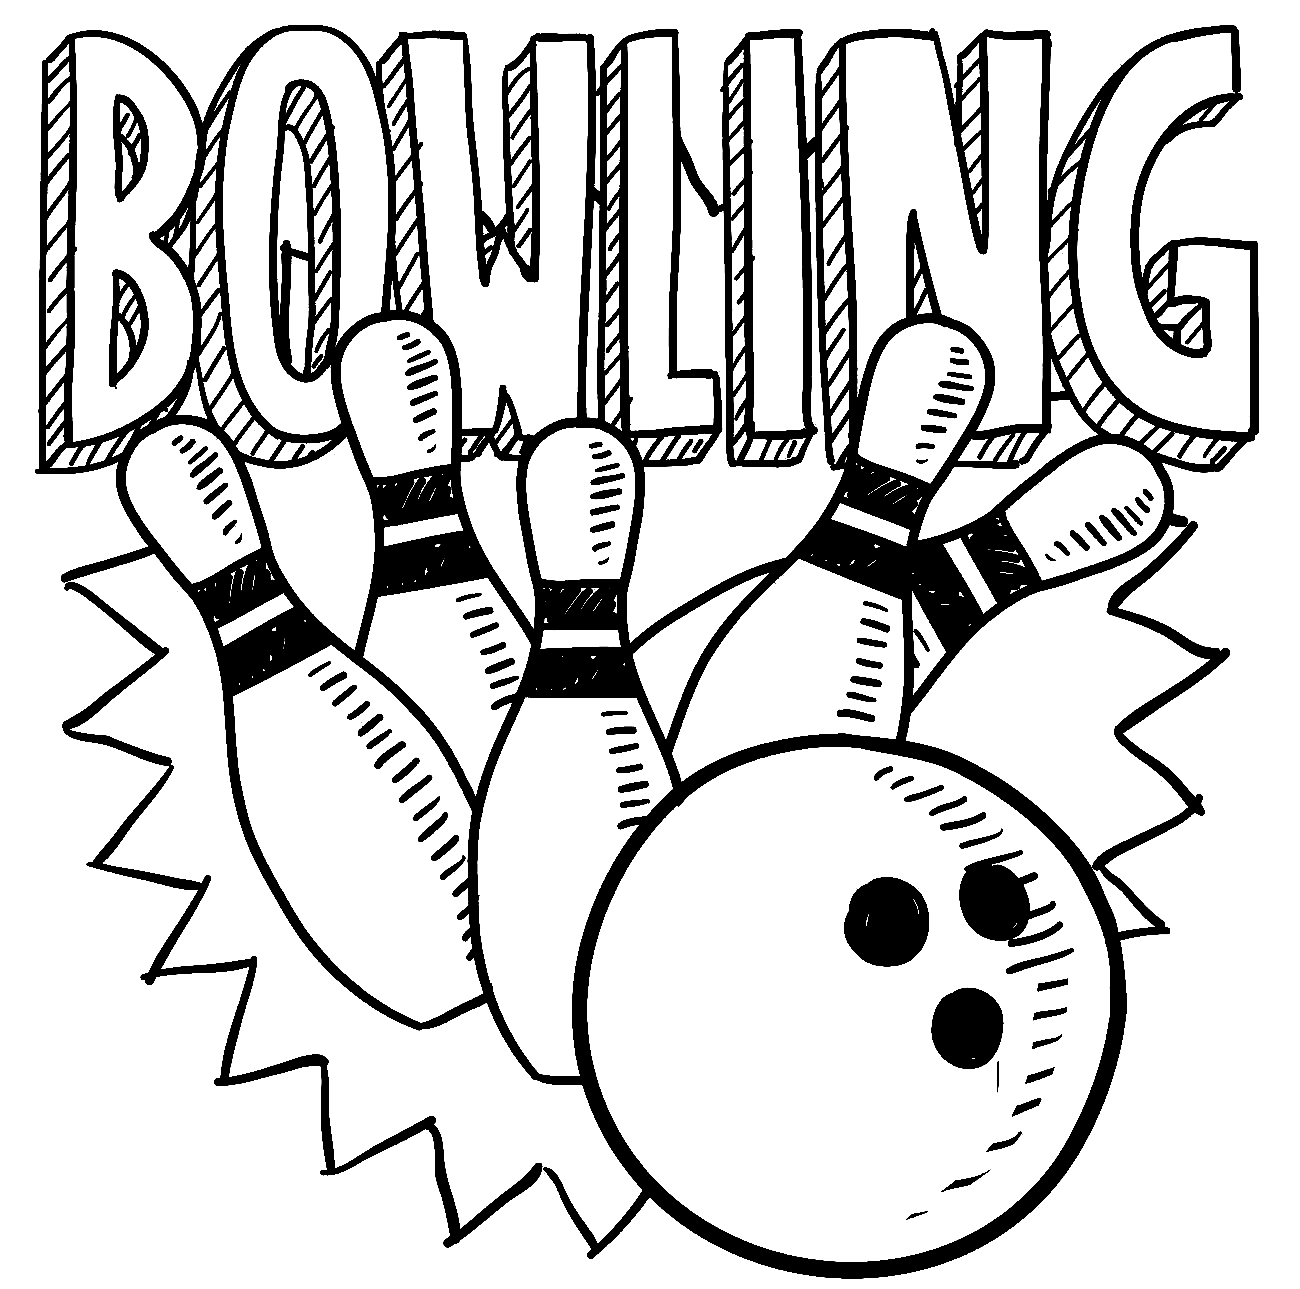 Bowling Pin Vorlage Ausmalbilder - vrogue.co